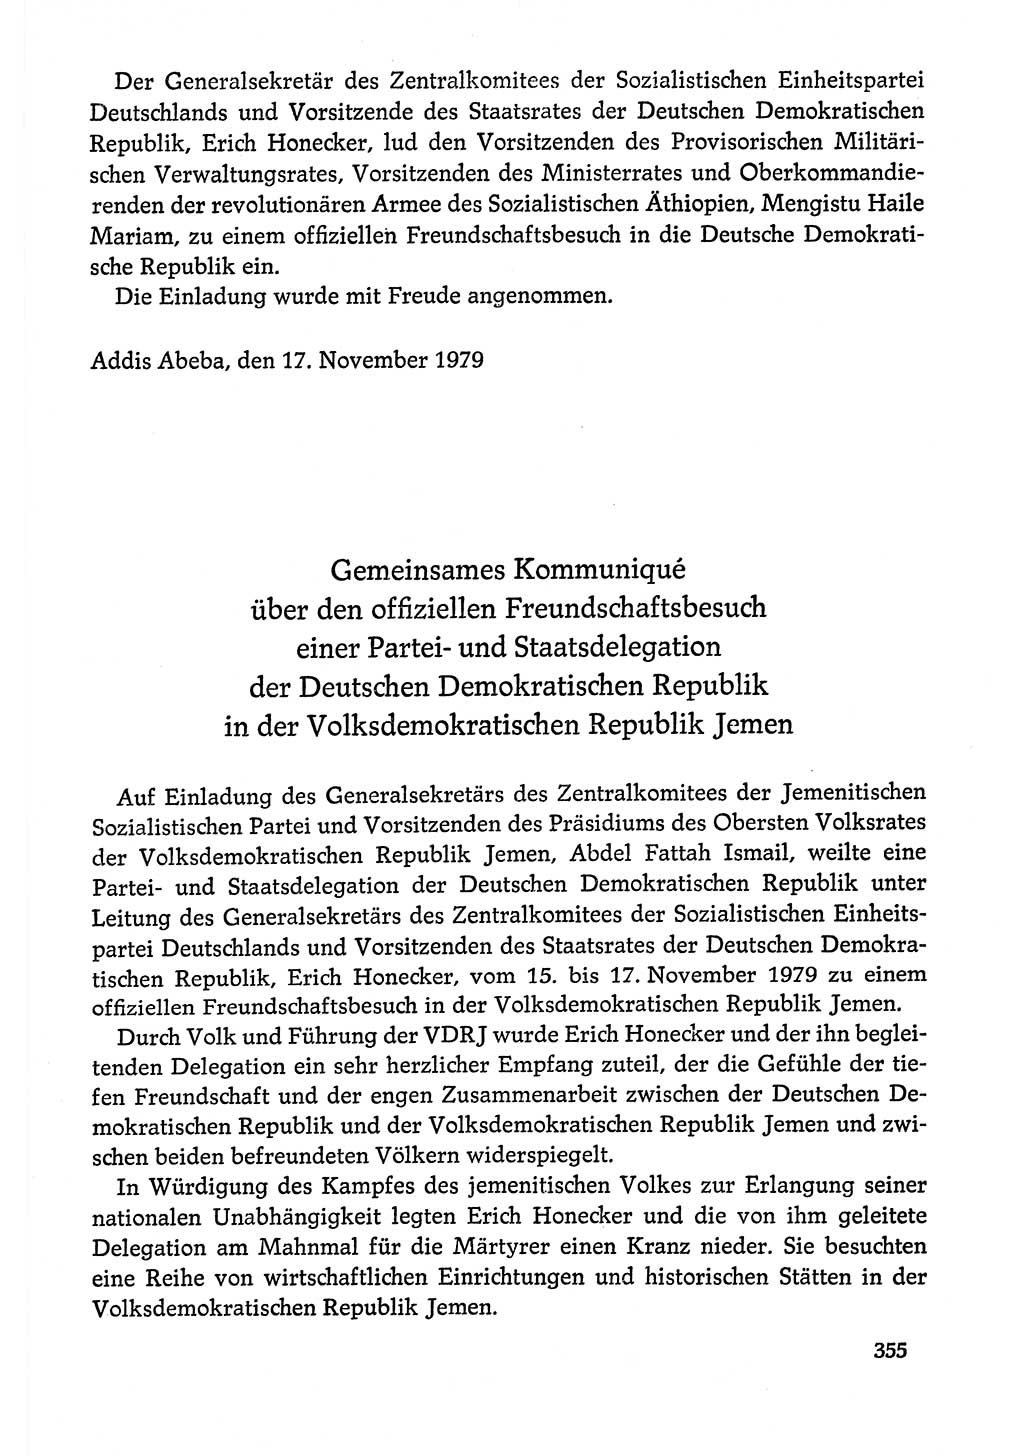 Dokumente der Sozialistischen Einheitspartei Deutschlands (SED) [Deutsche Demokratische Republik (DDR)] 1978-1979, Seite 355 (Dok. SED DDR 1978-1979, S. 355)